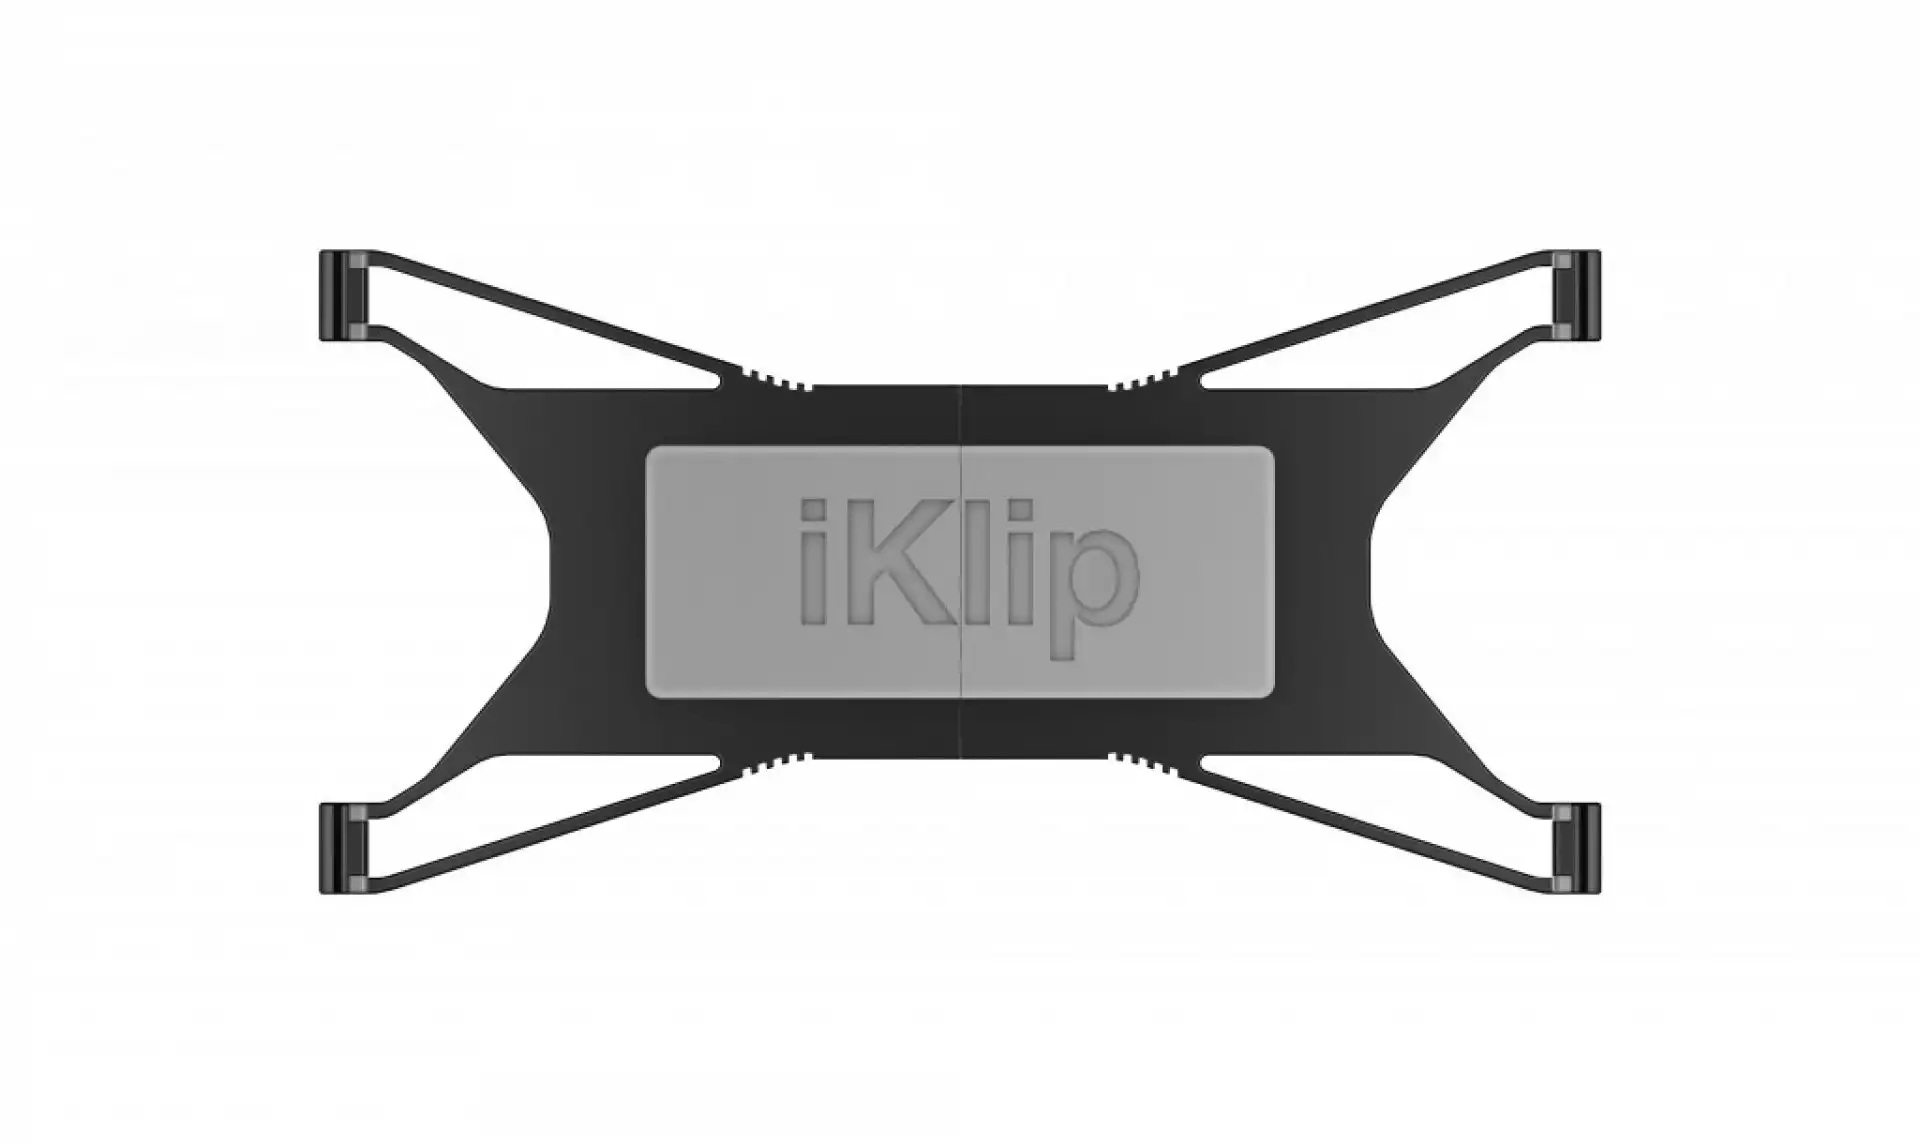 IK Multimedia iKlip Xpand